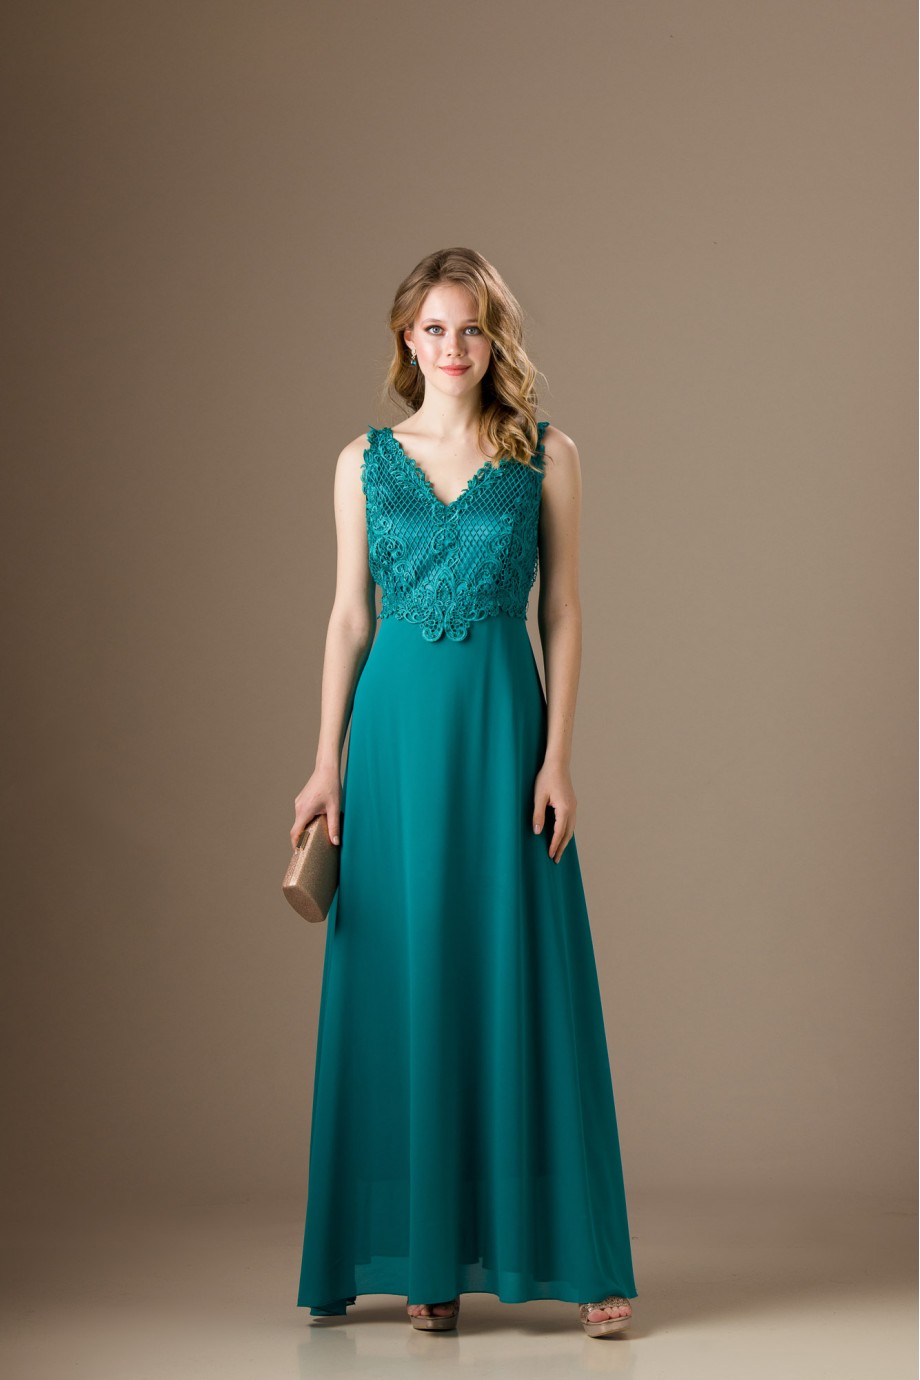 Πράσινο μακρύ φόρεμα με δαντέλα στο μπούστο